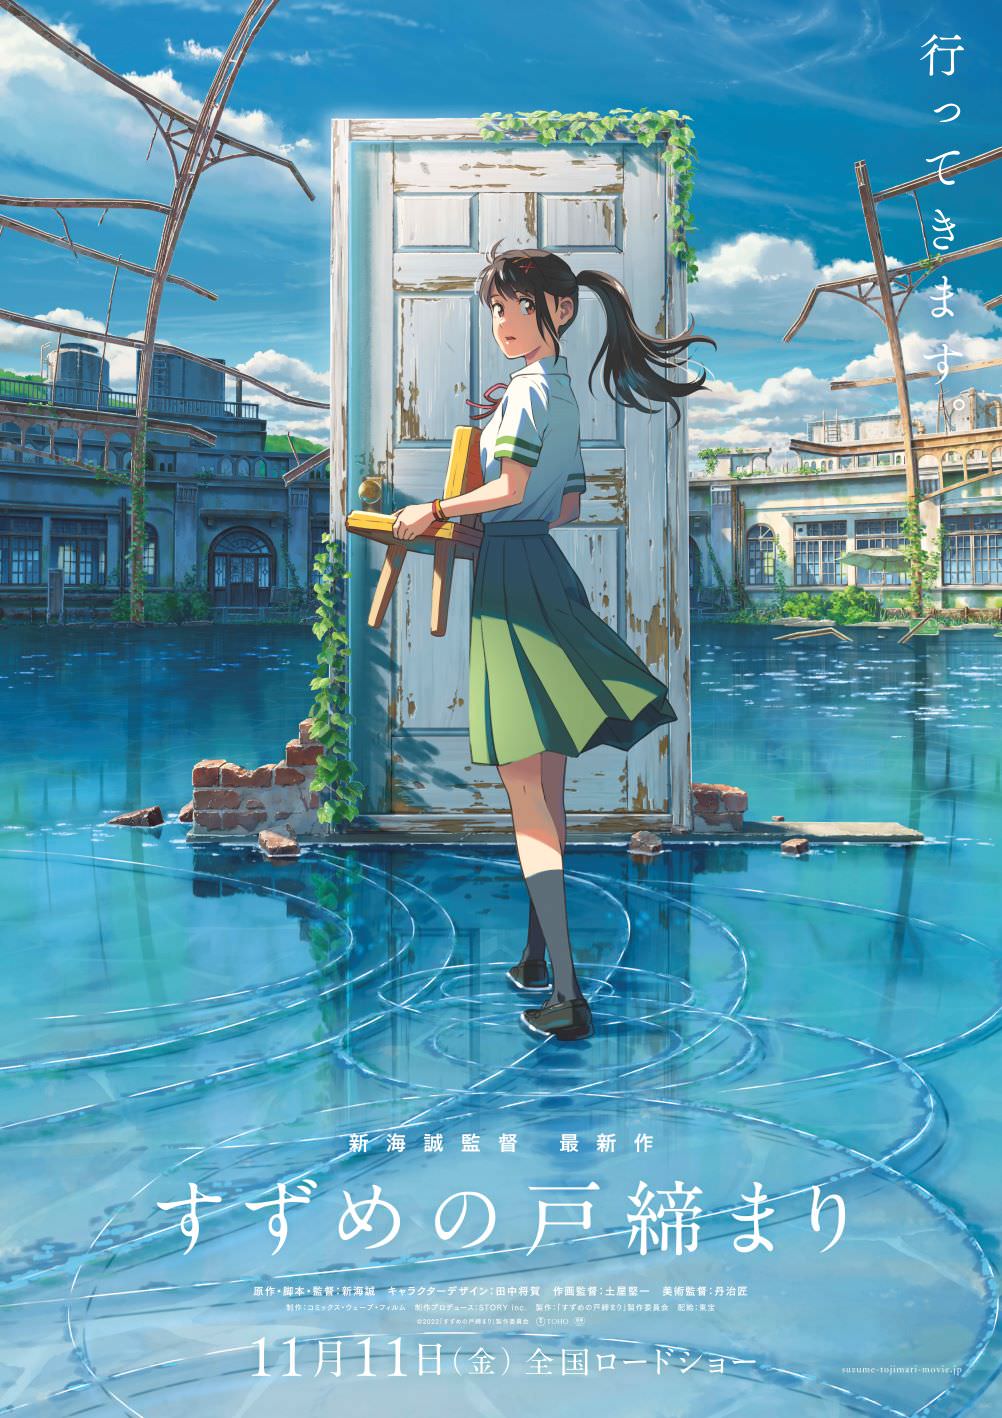 新海誠最新作「すずめの戸締まり」一番くじ 11月中旬にローソンで発売!